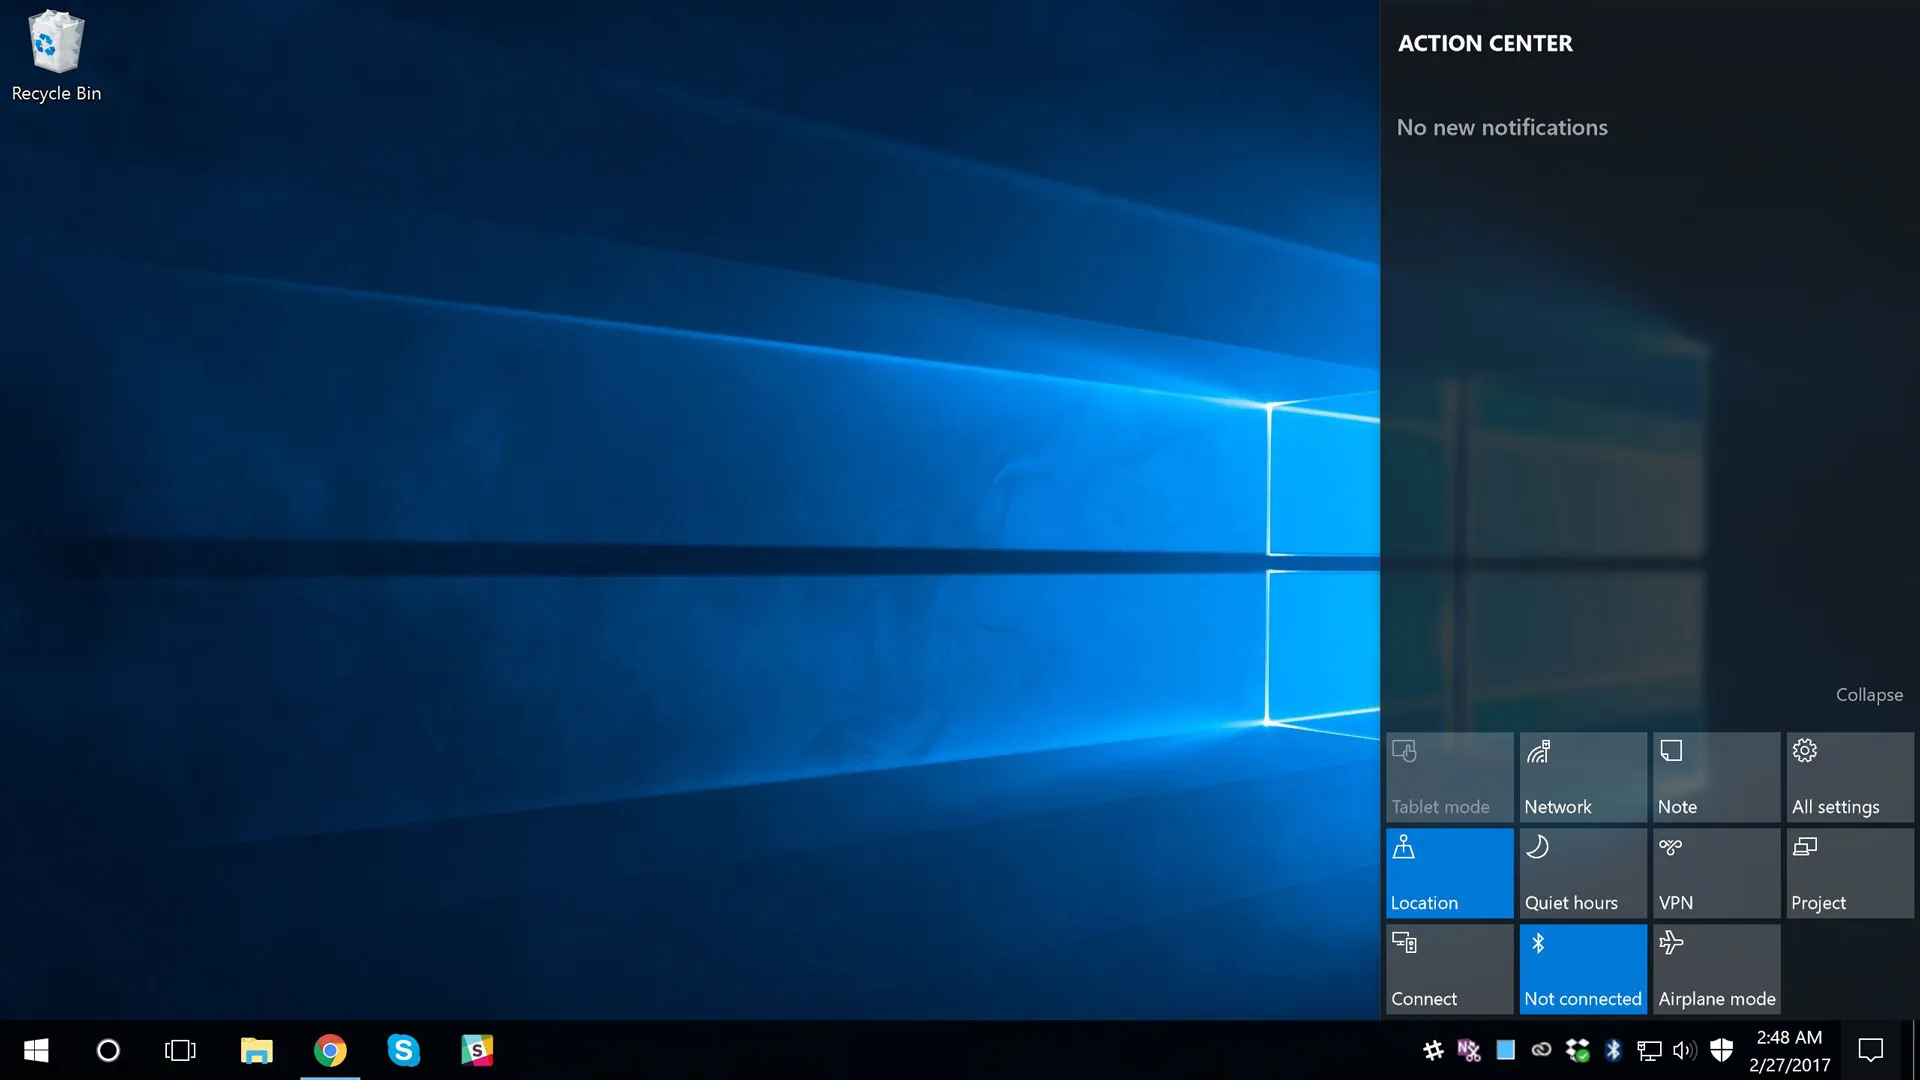 Cách ẩn các Quick Actions trong Action Center Windows 10